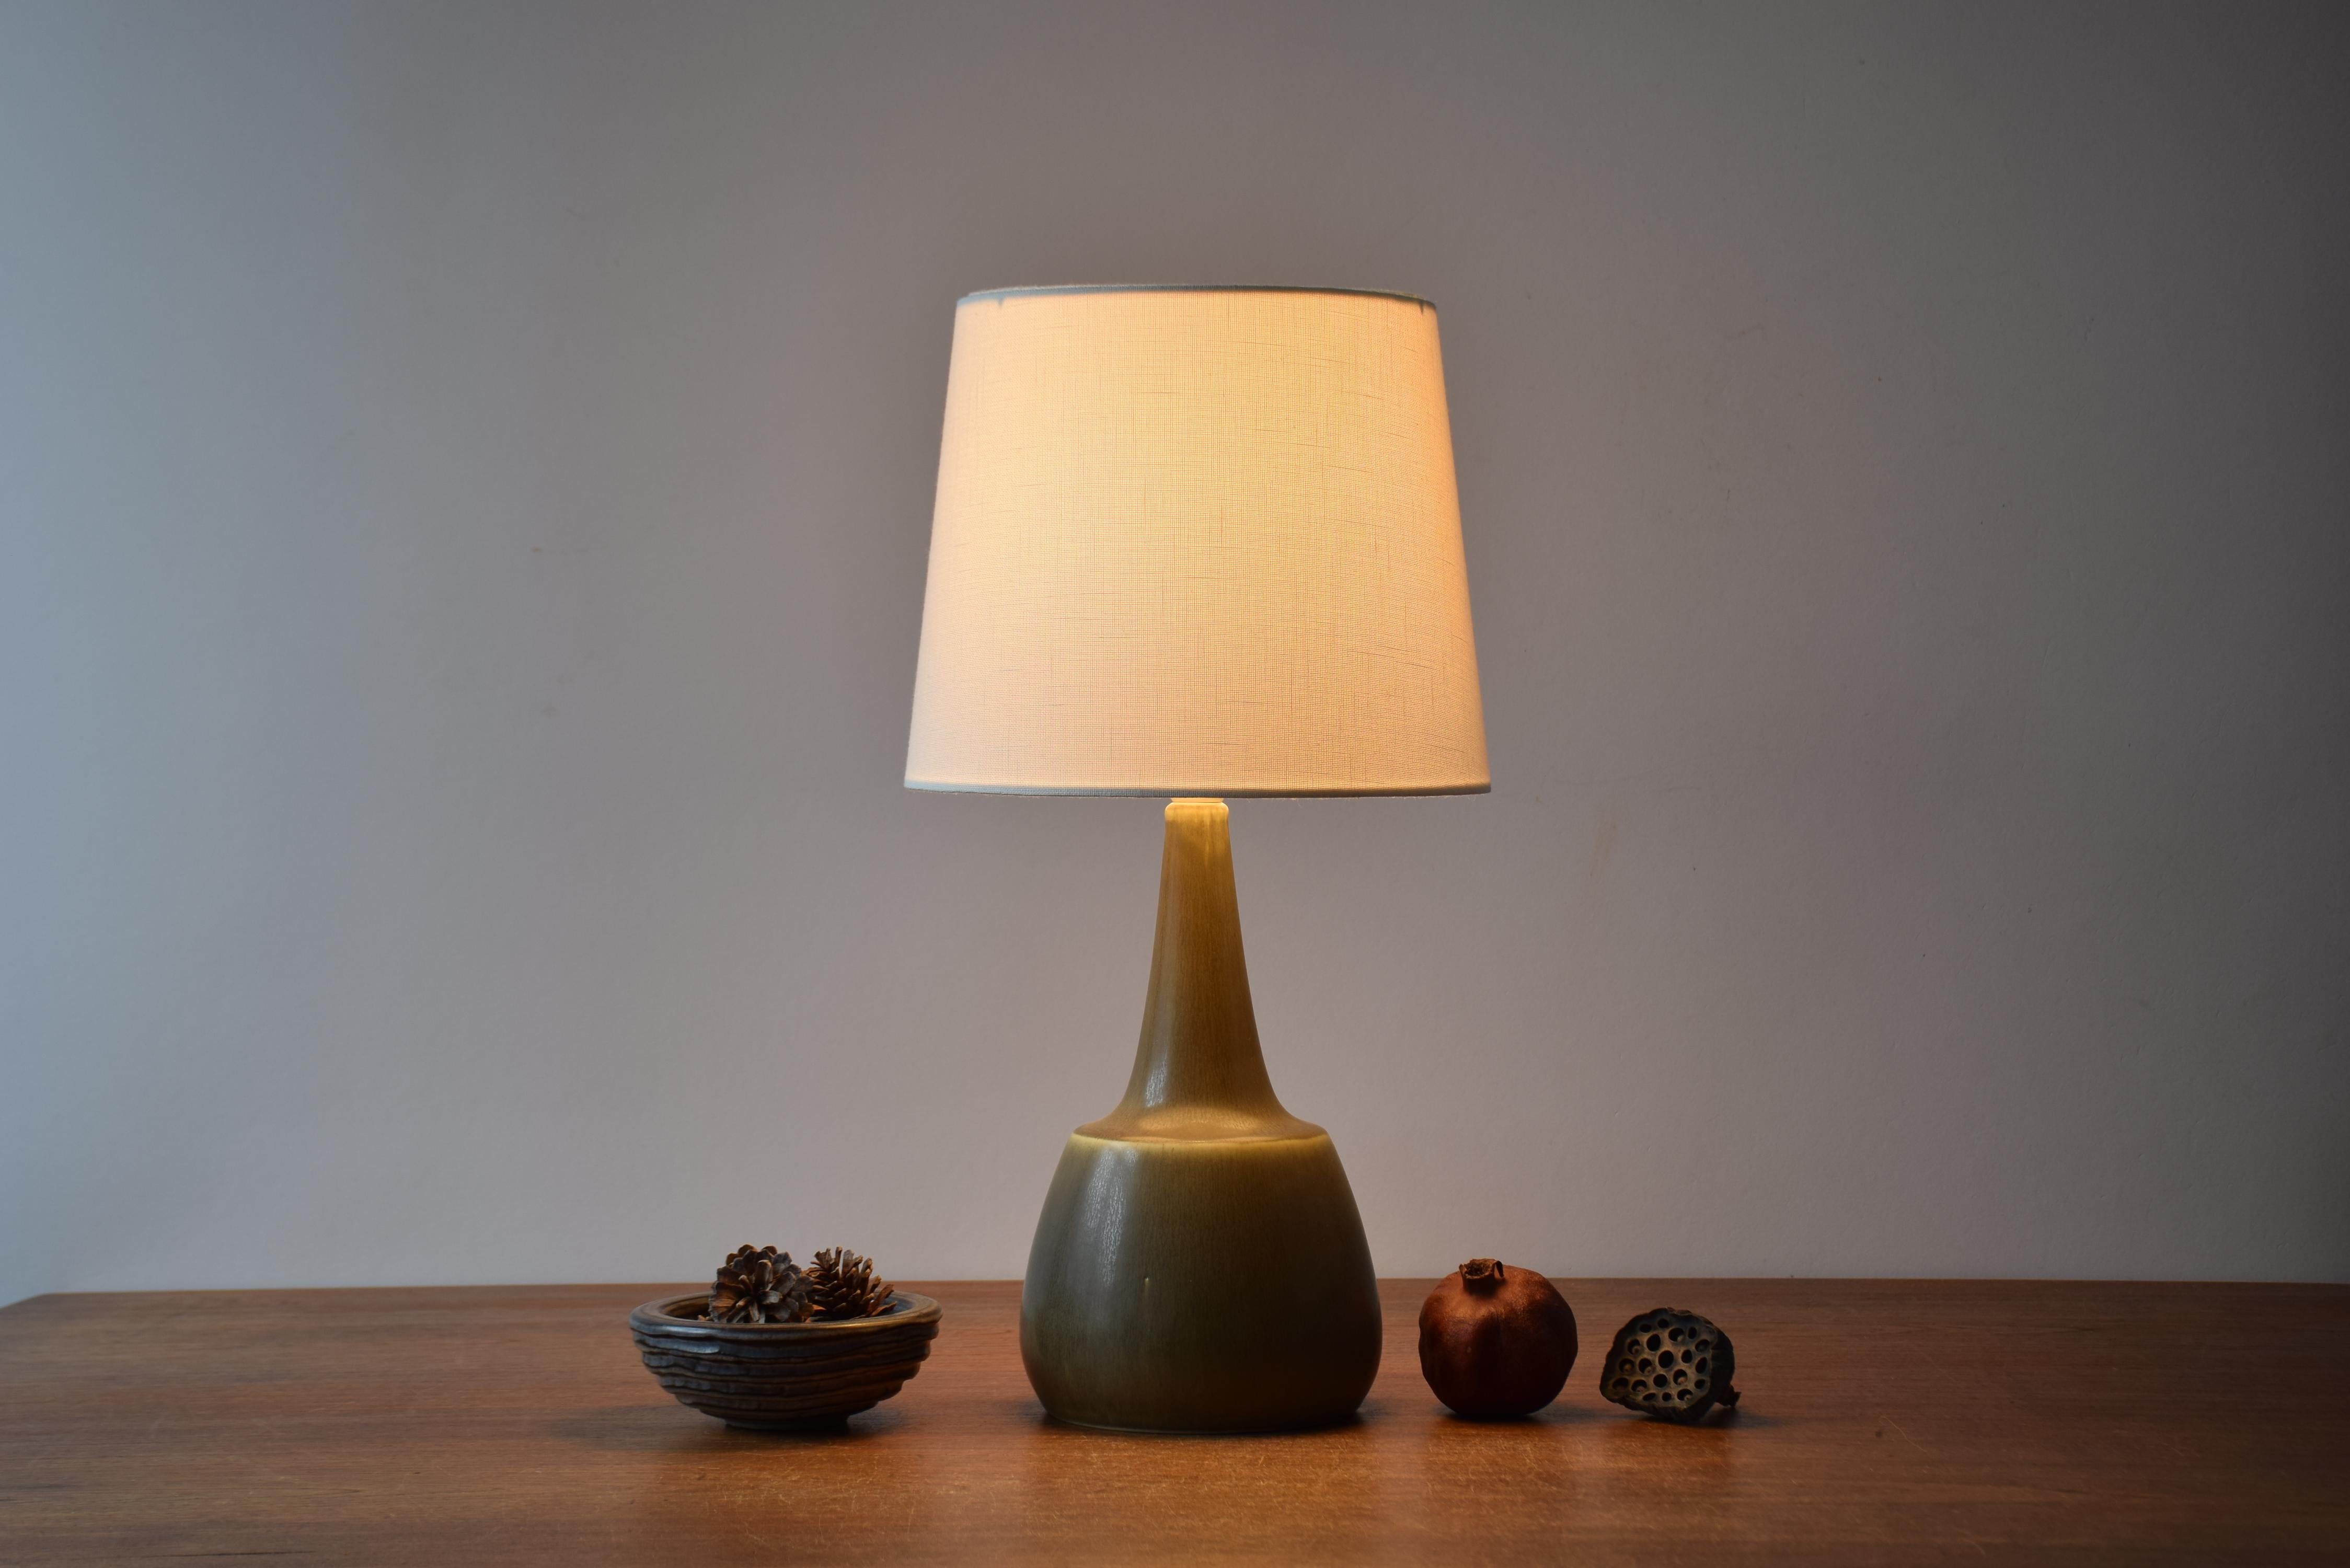 Tischleuchte aus der Mitte des Jahrhunderts aus der dänischen Keramikwerkstatt Palshus. 
Die Leuchte wurde von Per Linnemann-Schmidt entworfen und Ende der 1950er oder 1960er Jahre hergestellt.

Die Lampe hat eine olivgrün/khakifarbene